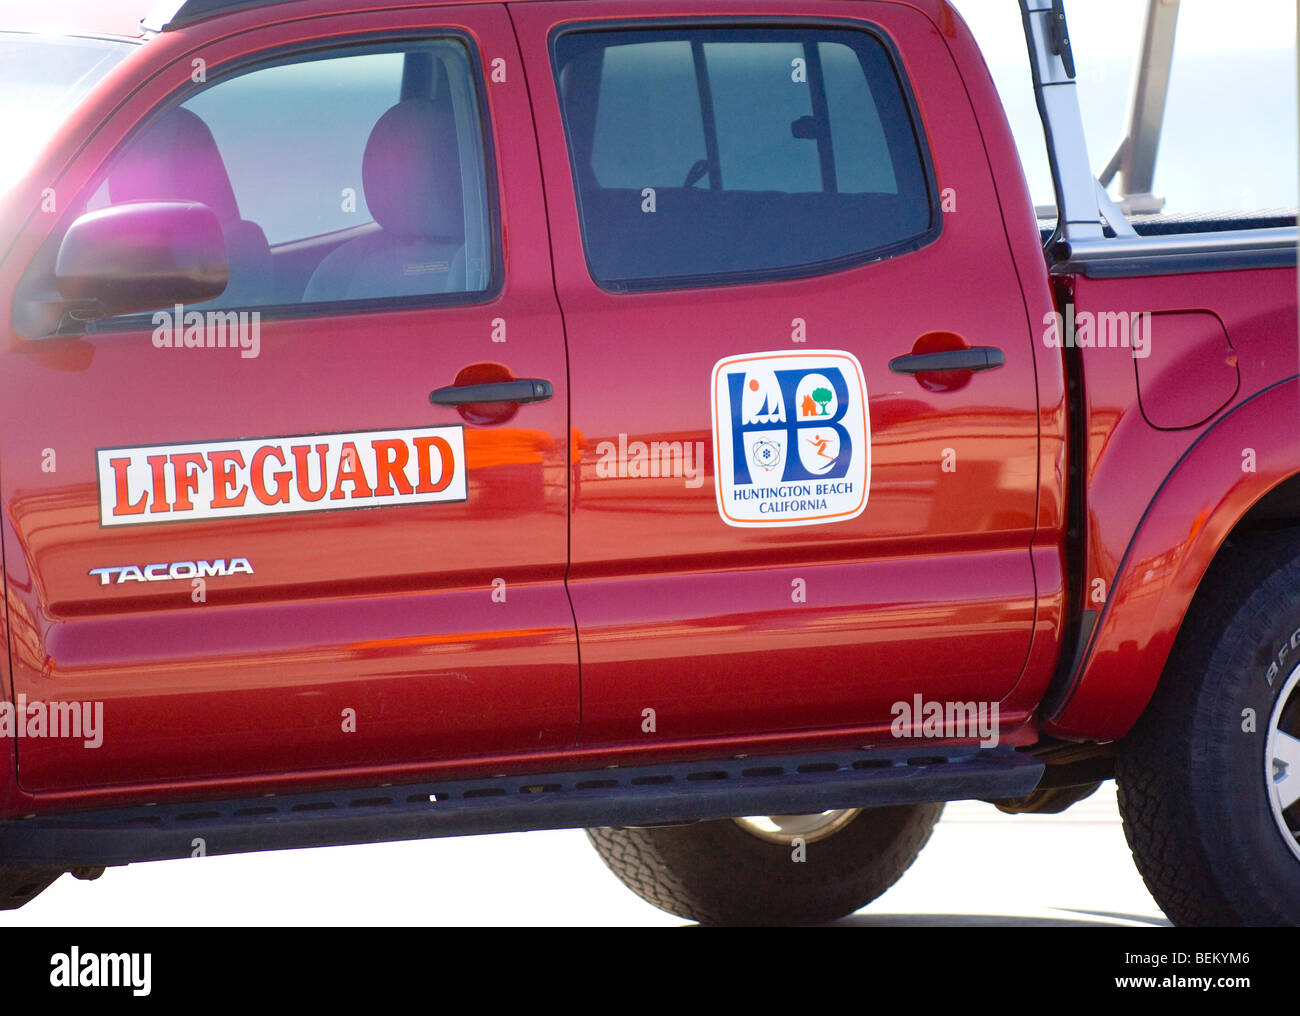 Huntington Beach Lifeguard.  A close-up view of the Huntington Beach Lifeguard red truck (Toyota Tacoma). Stock Photo